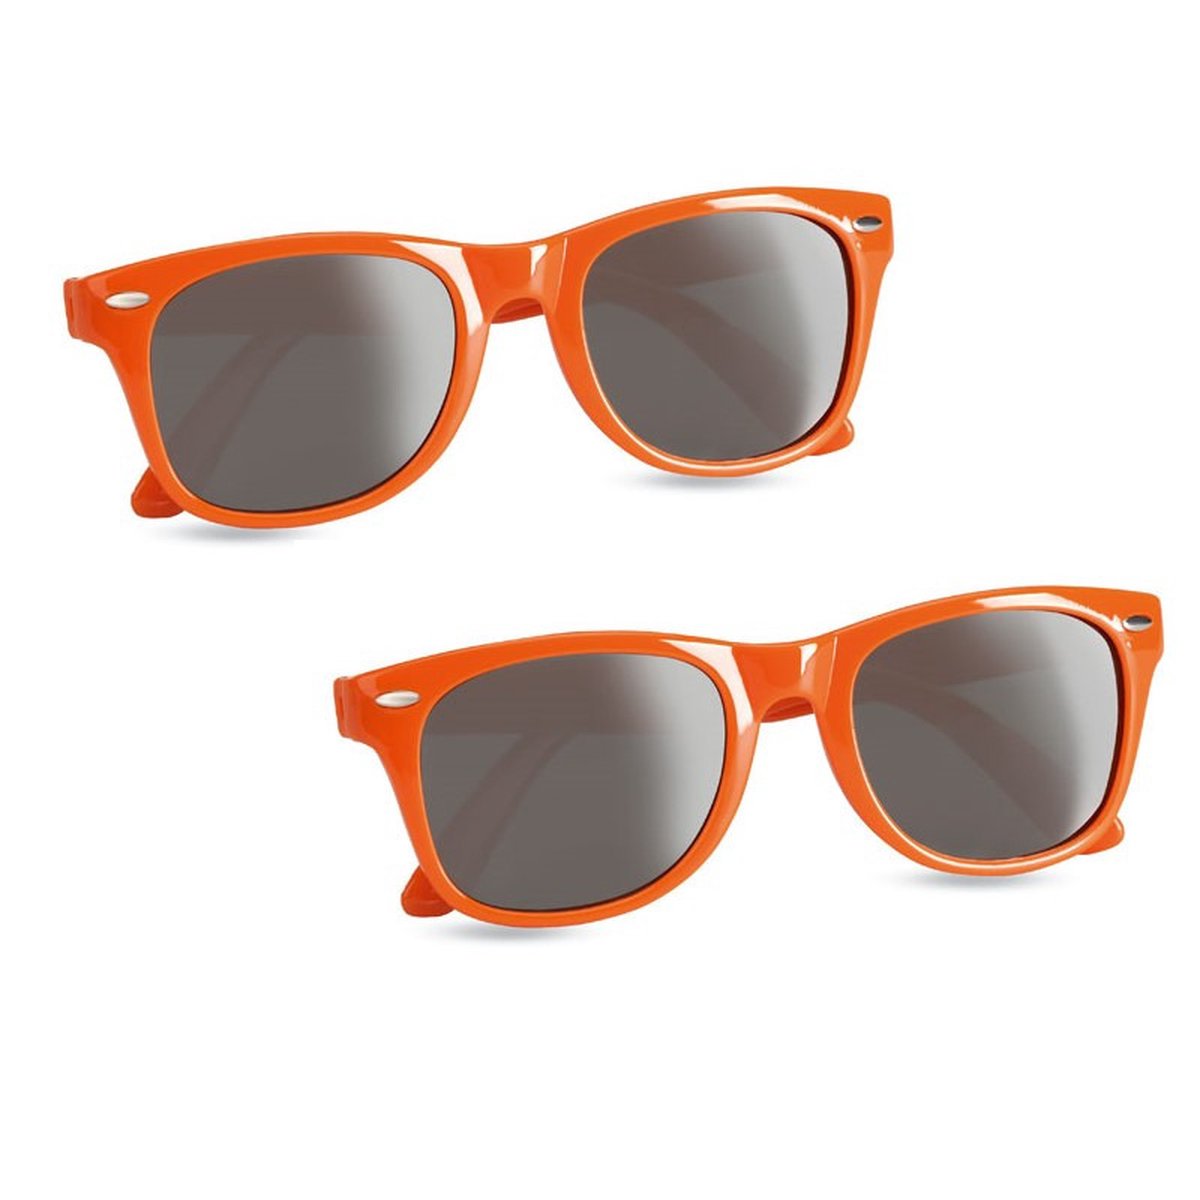 2x stuks hippe zonnebrillen met oranje montuur - UV400 bescherming - Koningsdag - EK/WK verkleed accessoires